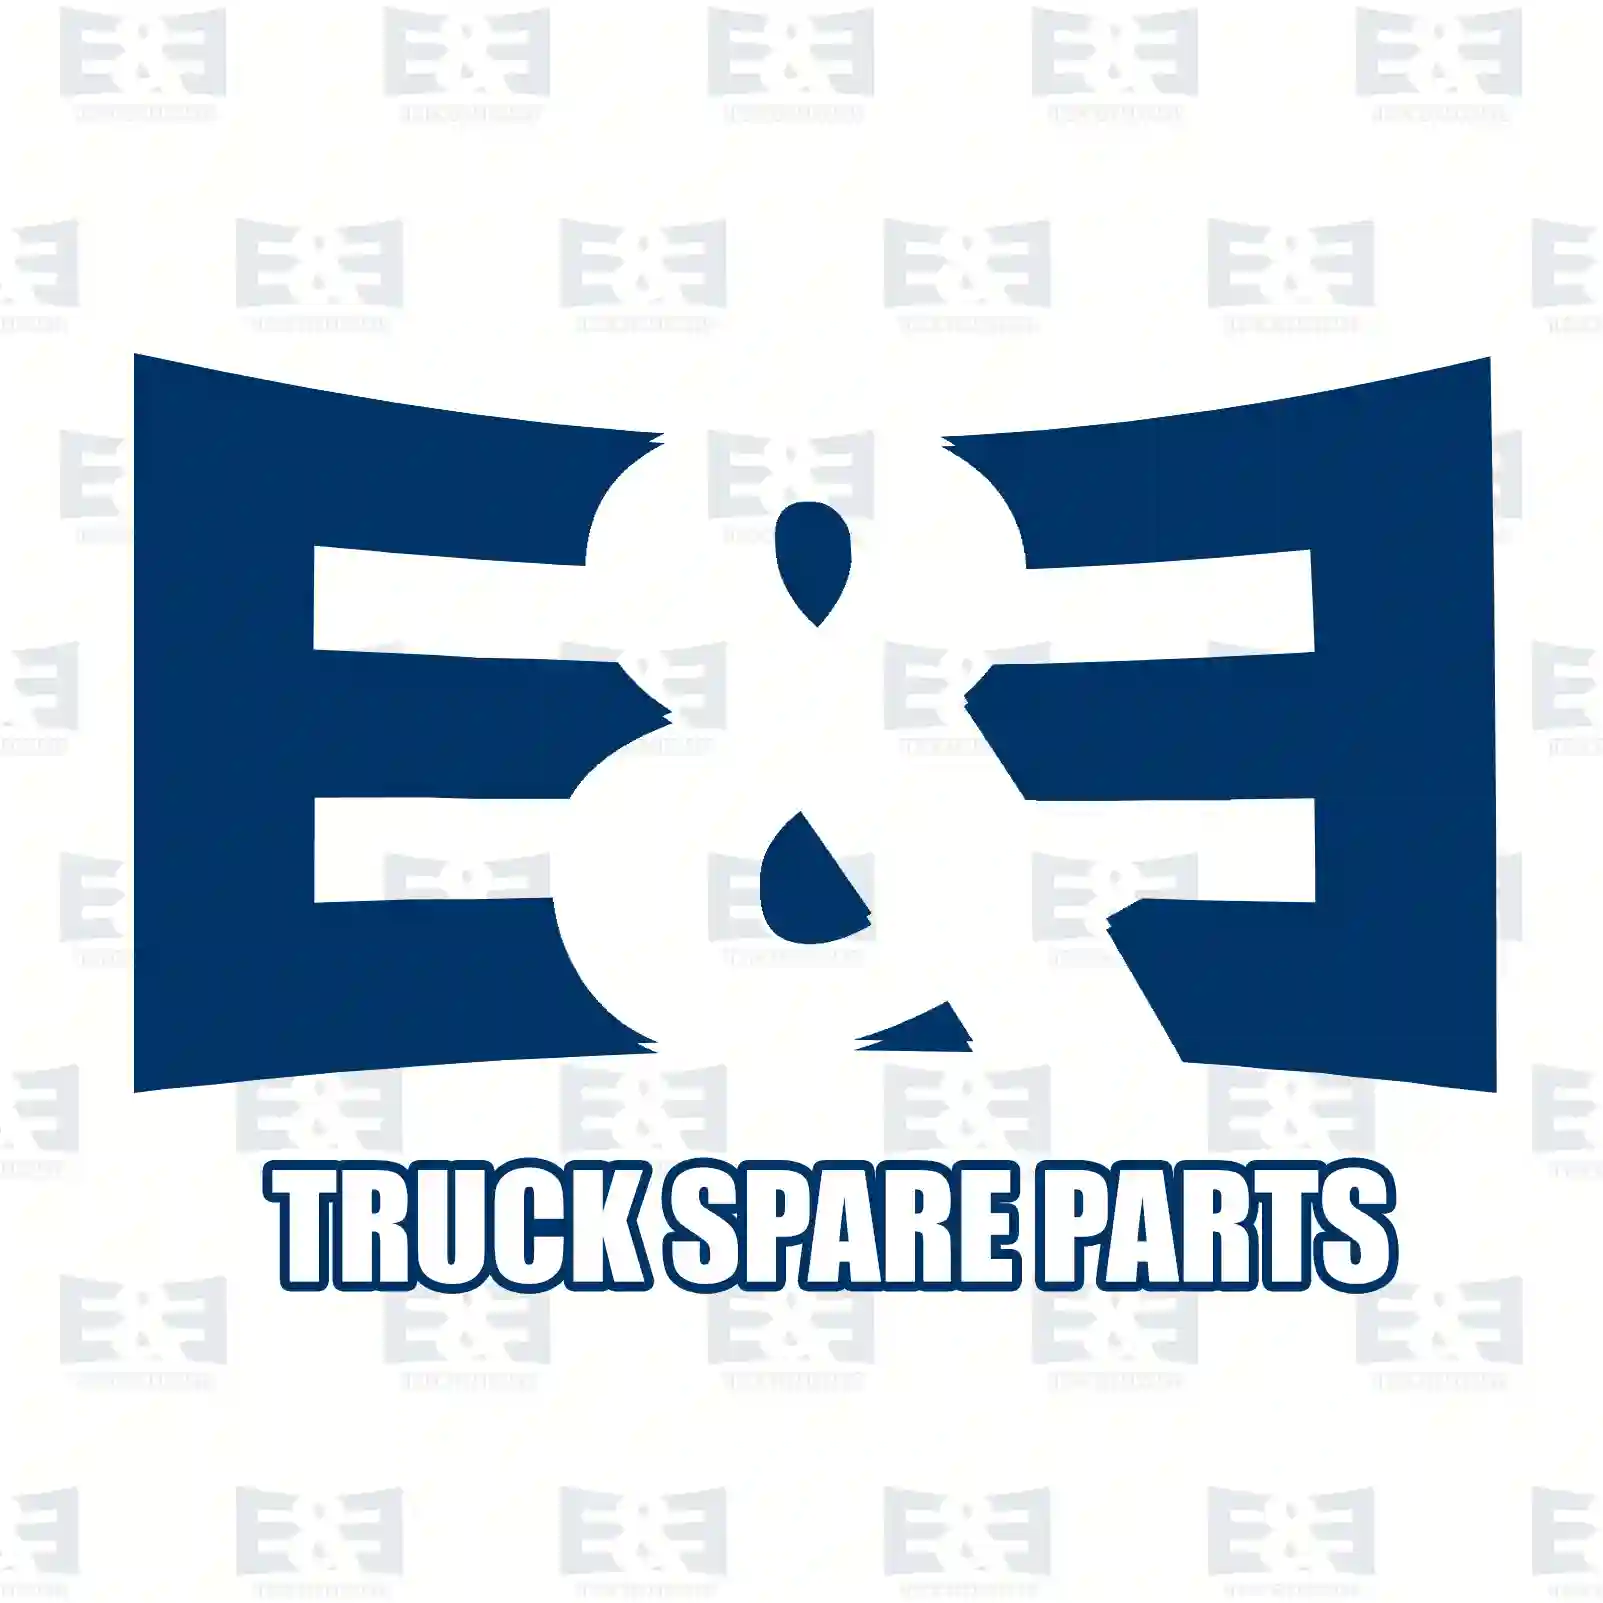 Shock absorber, 2E2283207, 0023261100, 0033268300, 3873260000, , ||  2E2283207 E&E Truck Spare Parts | Truck Spare Parts, Auotomotive Spare Parts Shock absorber, 2E2283207, 0023261100, 0033268300, 3873260000, , ||  2E2283207 E&E Truck Spare Parts | Truck Spare Parts, Auotomotive Spare Parts